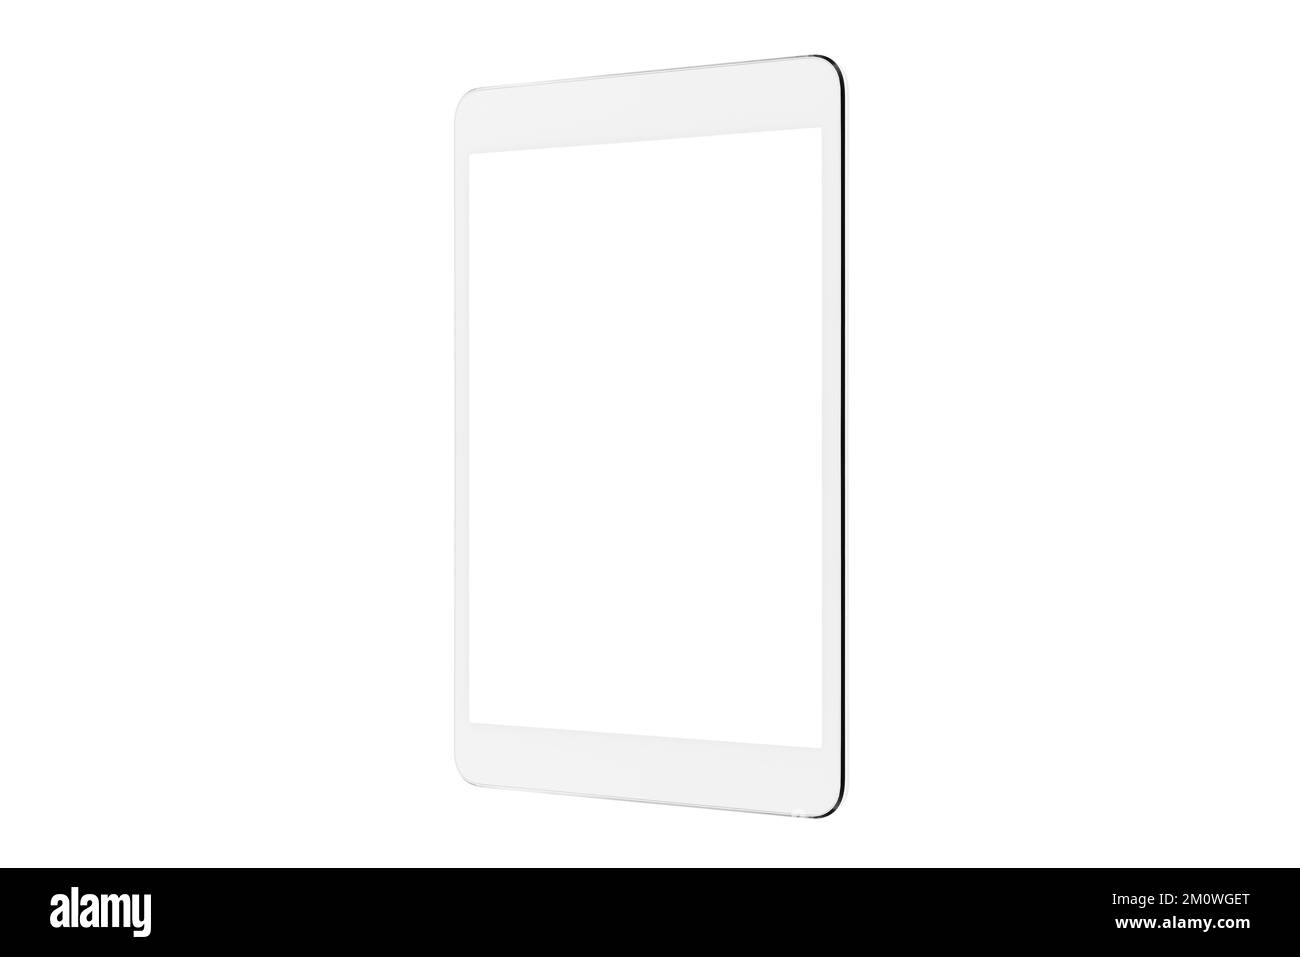 Tablette numérique isolée dans un arrière-plan blanc maquette trois quarts, Nouvelle tablette sans cadre moderne noire vierge avec écran blanc Banque D'Images